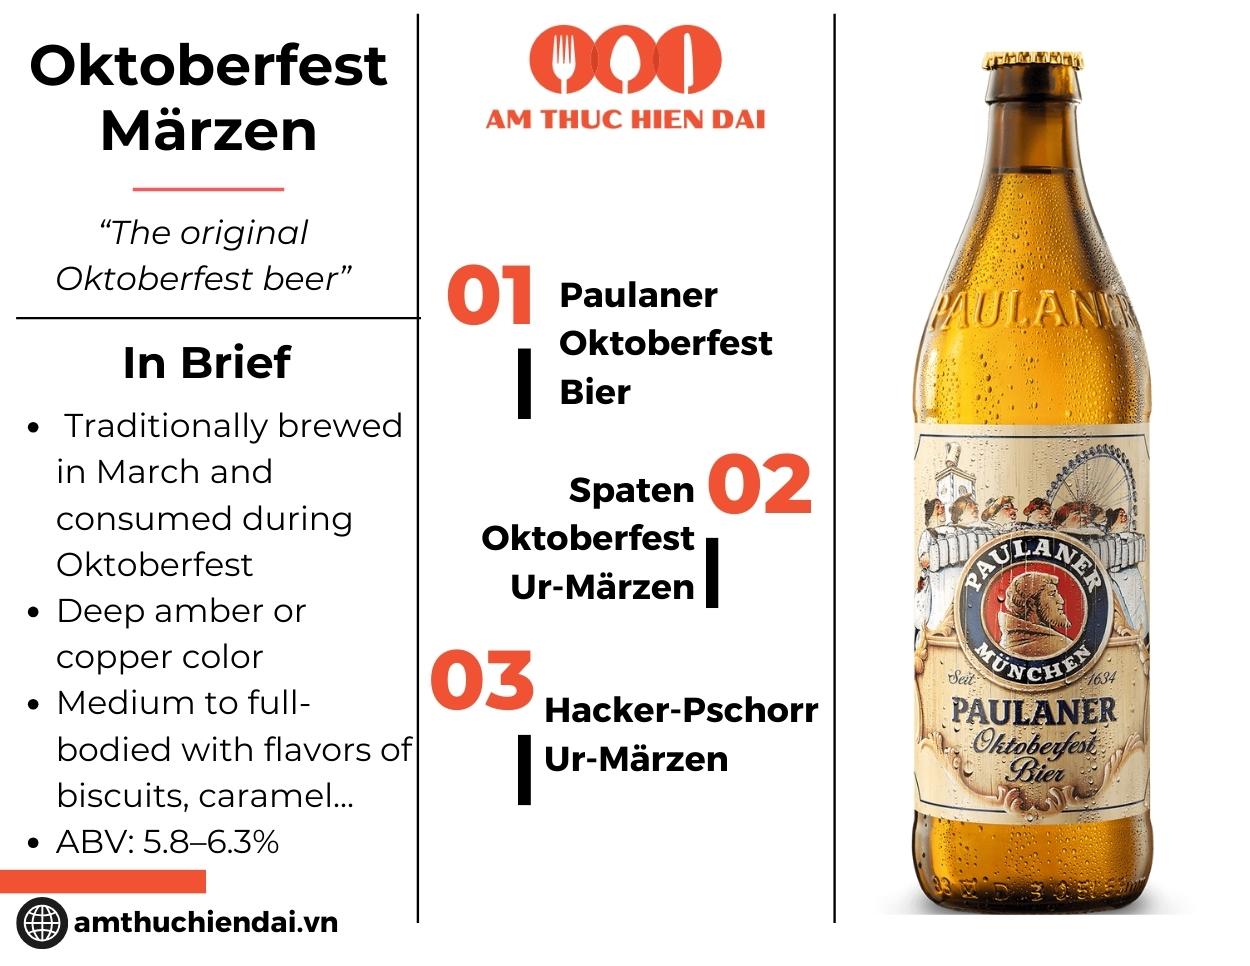 Oktoberfest Marzen bier caractheristics and profile